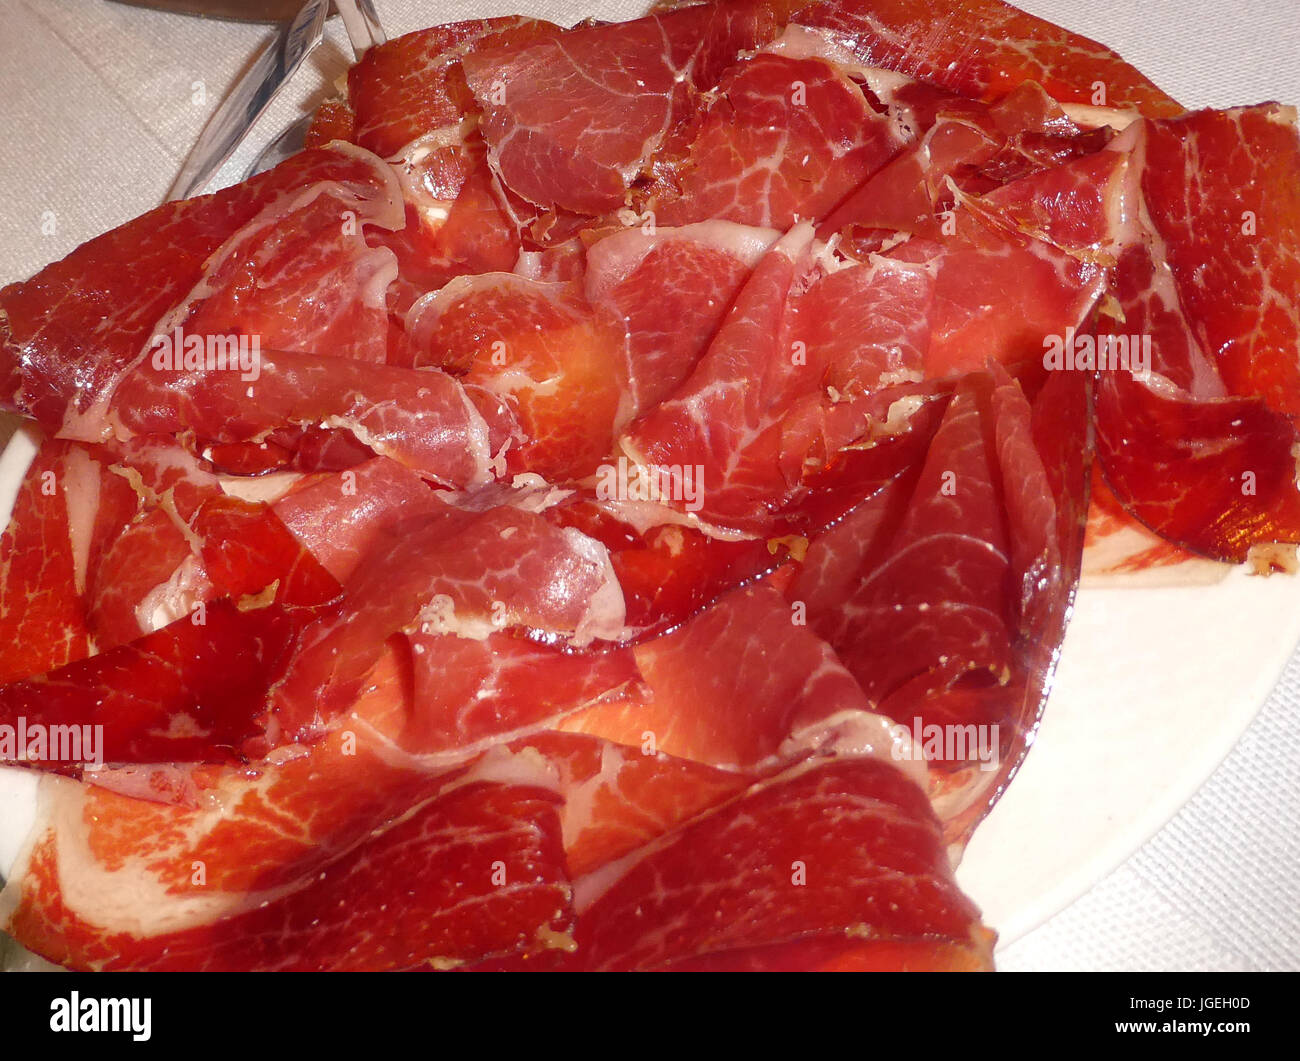 Iberian ham dishes Stock Photo